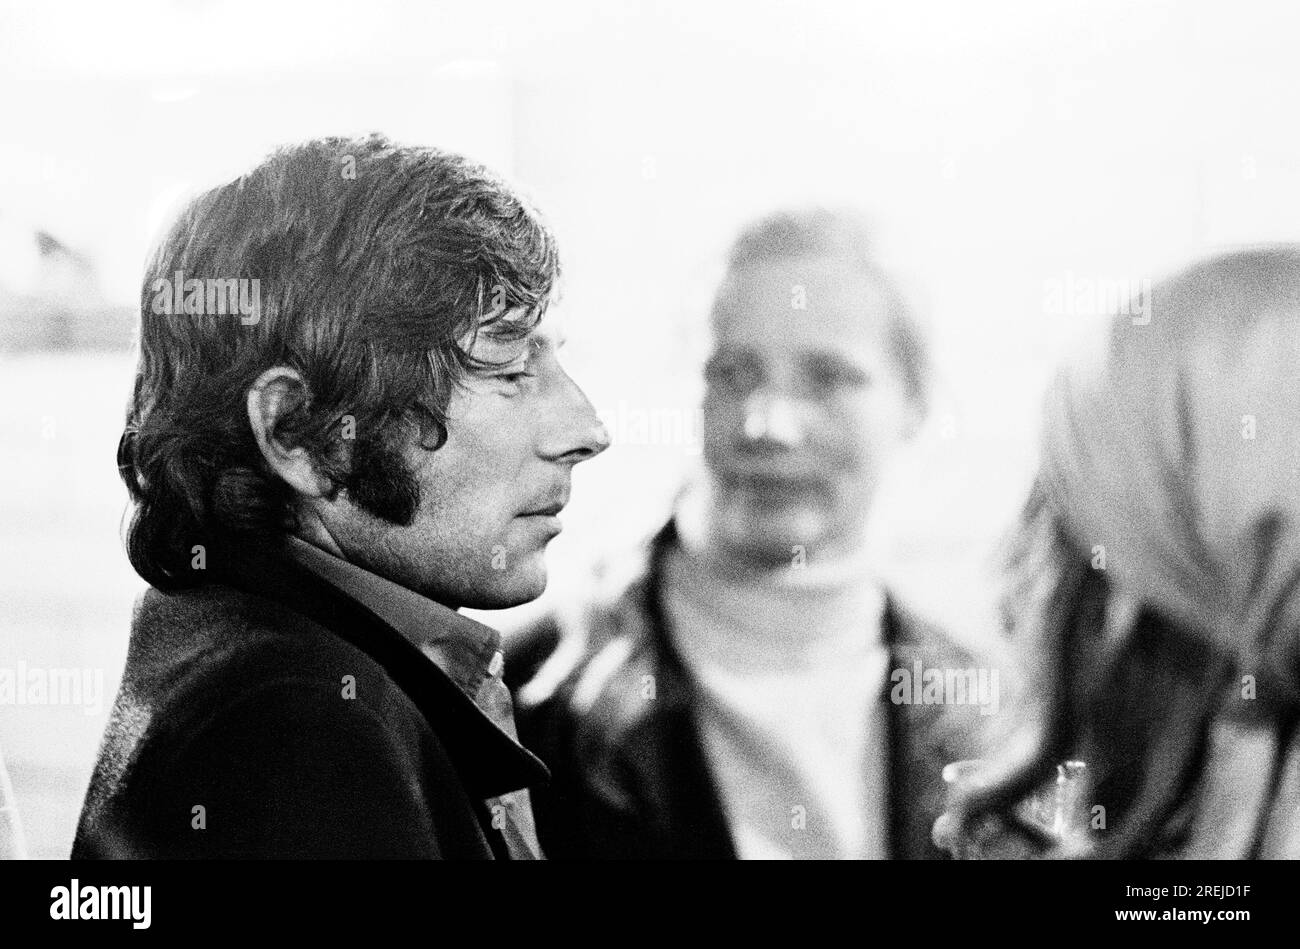 Französisch-polnischer Regisseur, Produzent, Drehbuchautor und Schauspieler Roman Polanski in CINEMA CITY - eine Ausstellung von 75 Jahren bewegender Bilder im Round House, London NW1 im Oktober 1970 Stockfoto